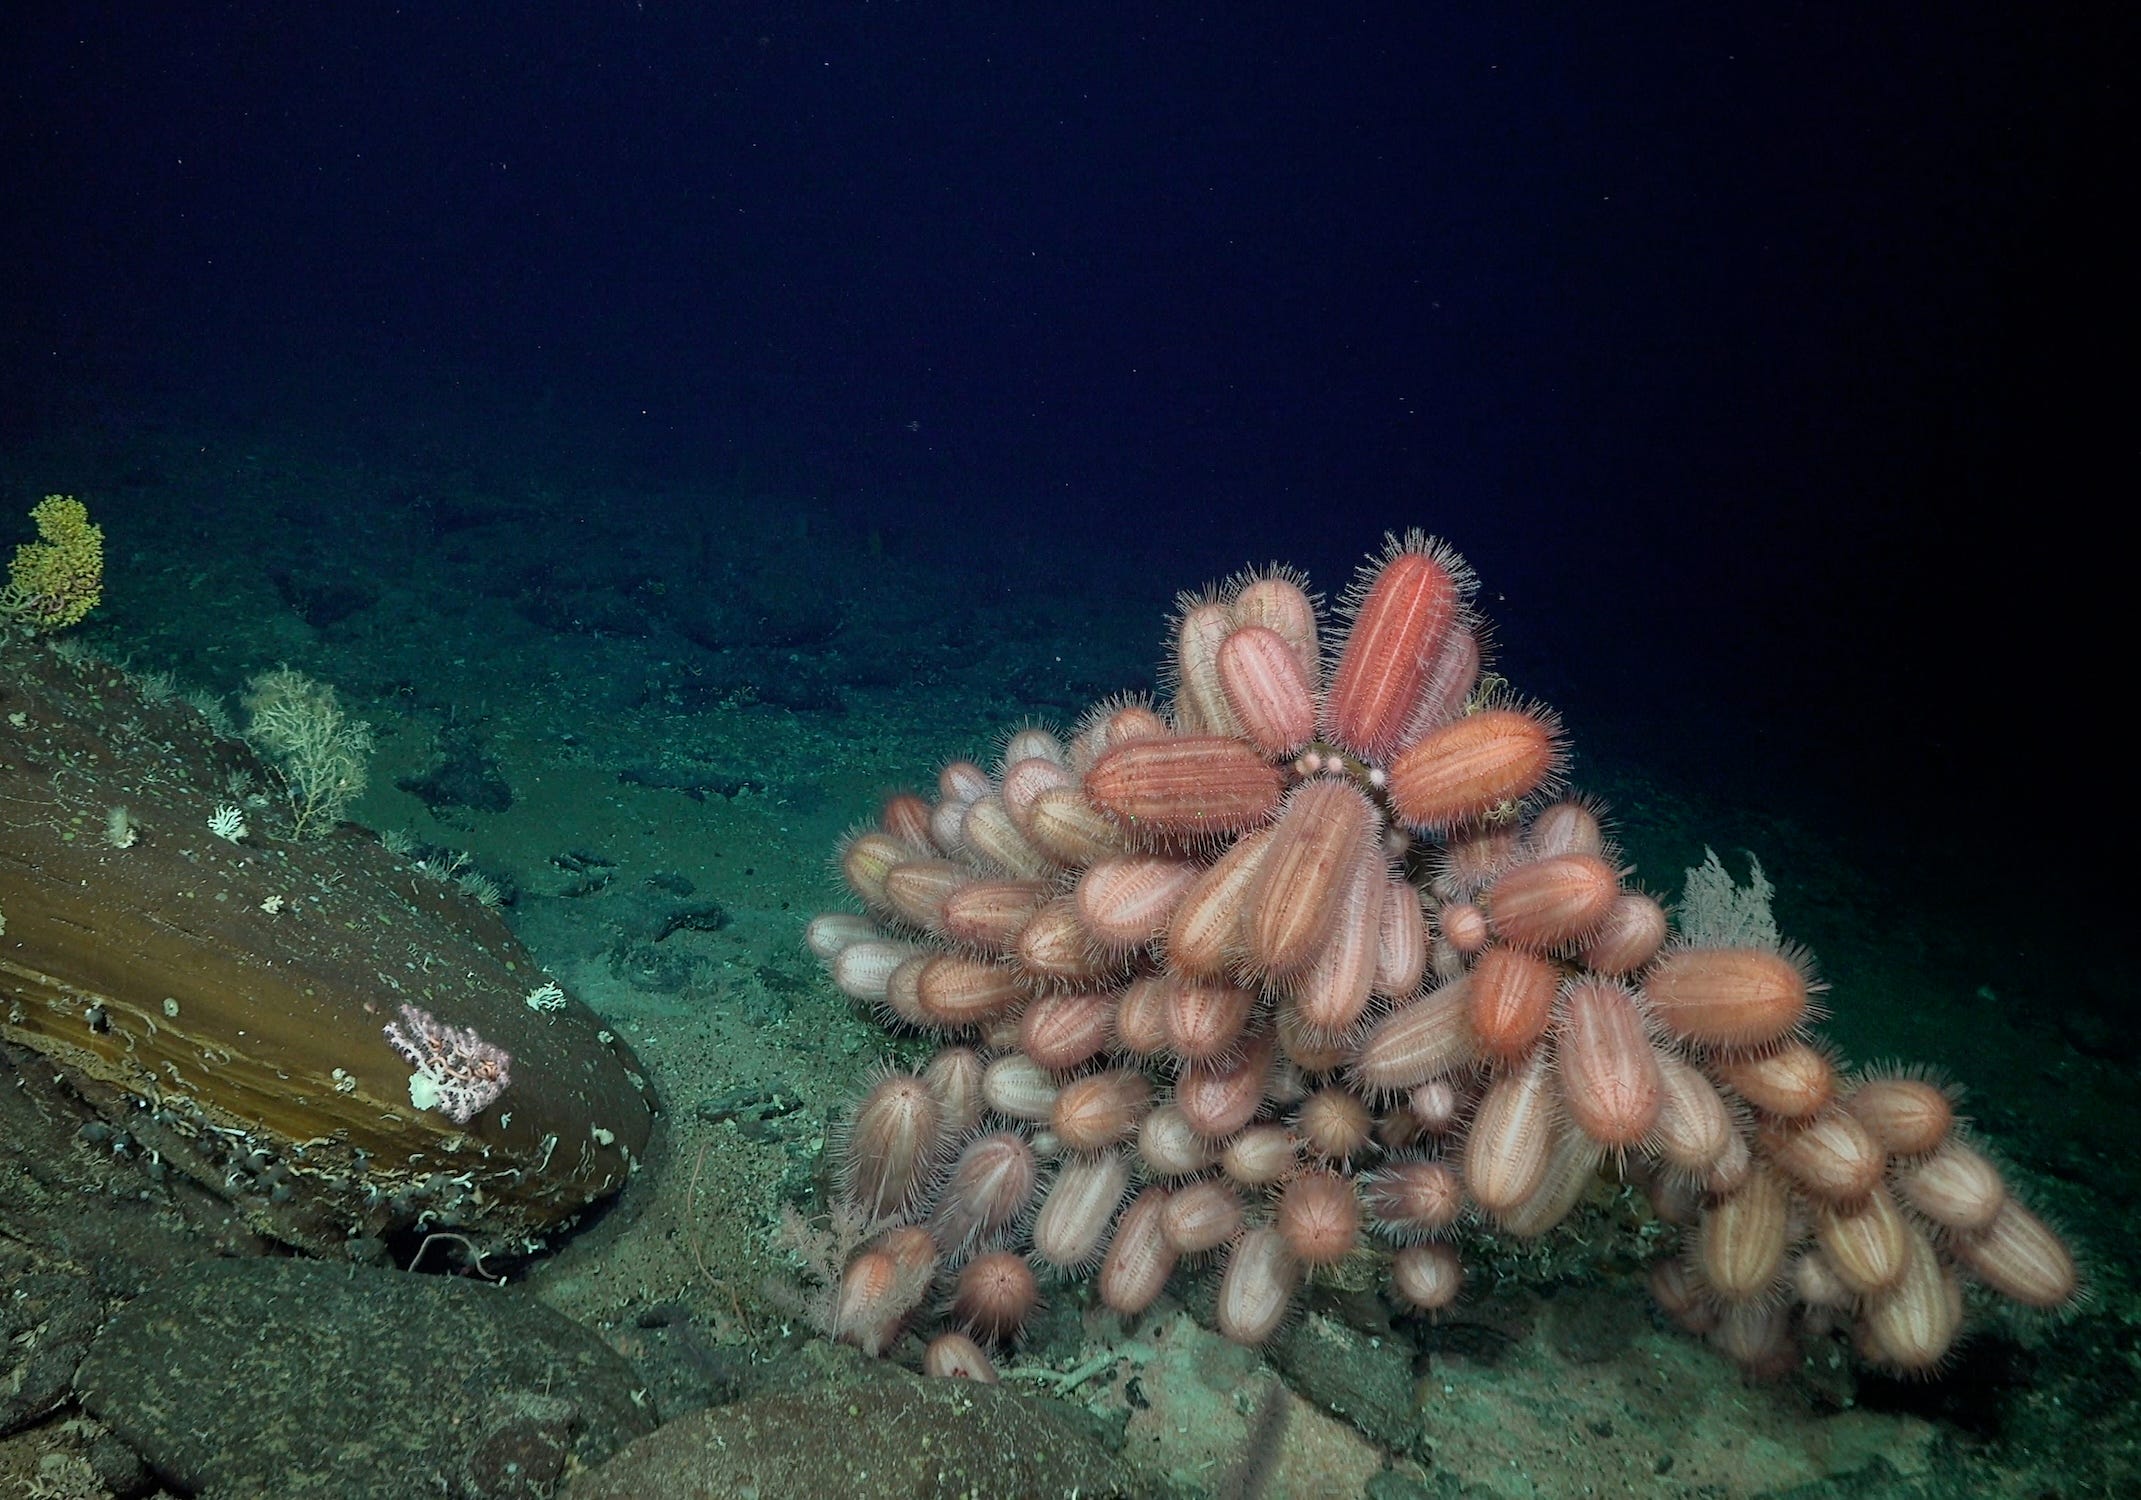 Eine Gruppe von Seeigeln, die in Rosa-, Braun- und Weißtönen auf dem Meeresgrund erscheinen